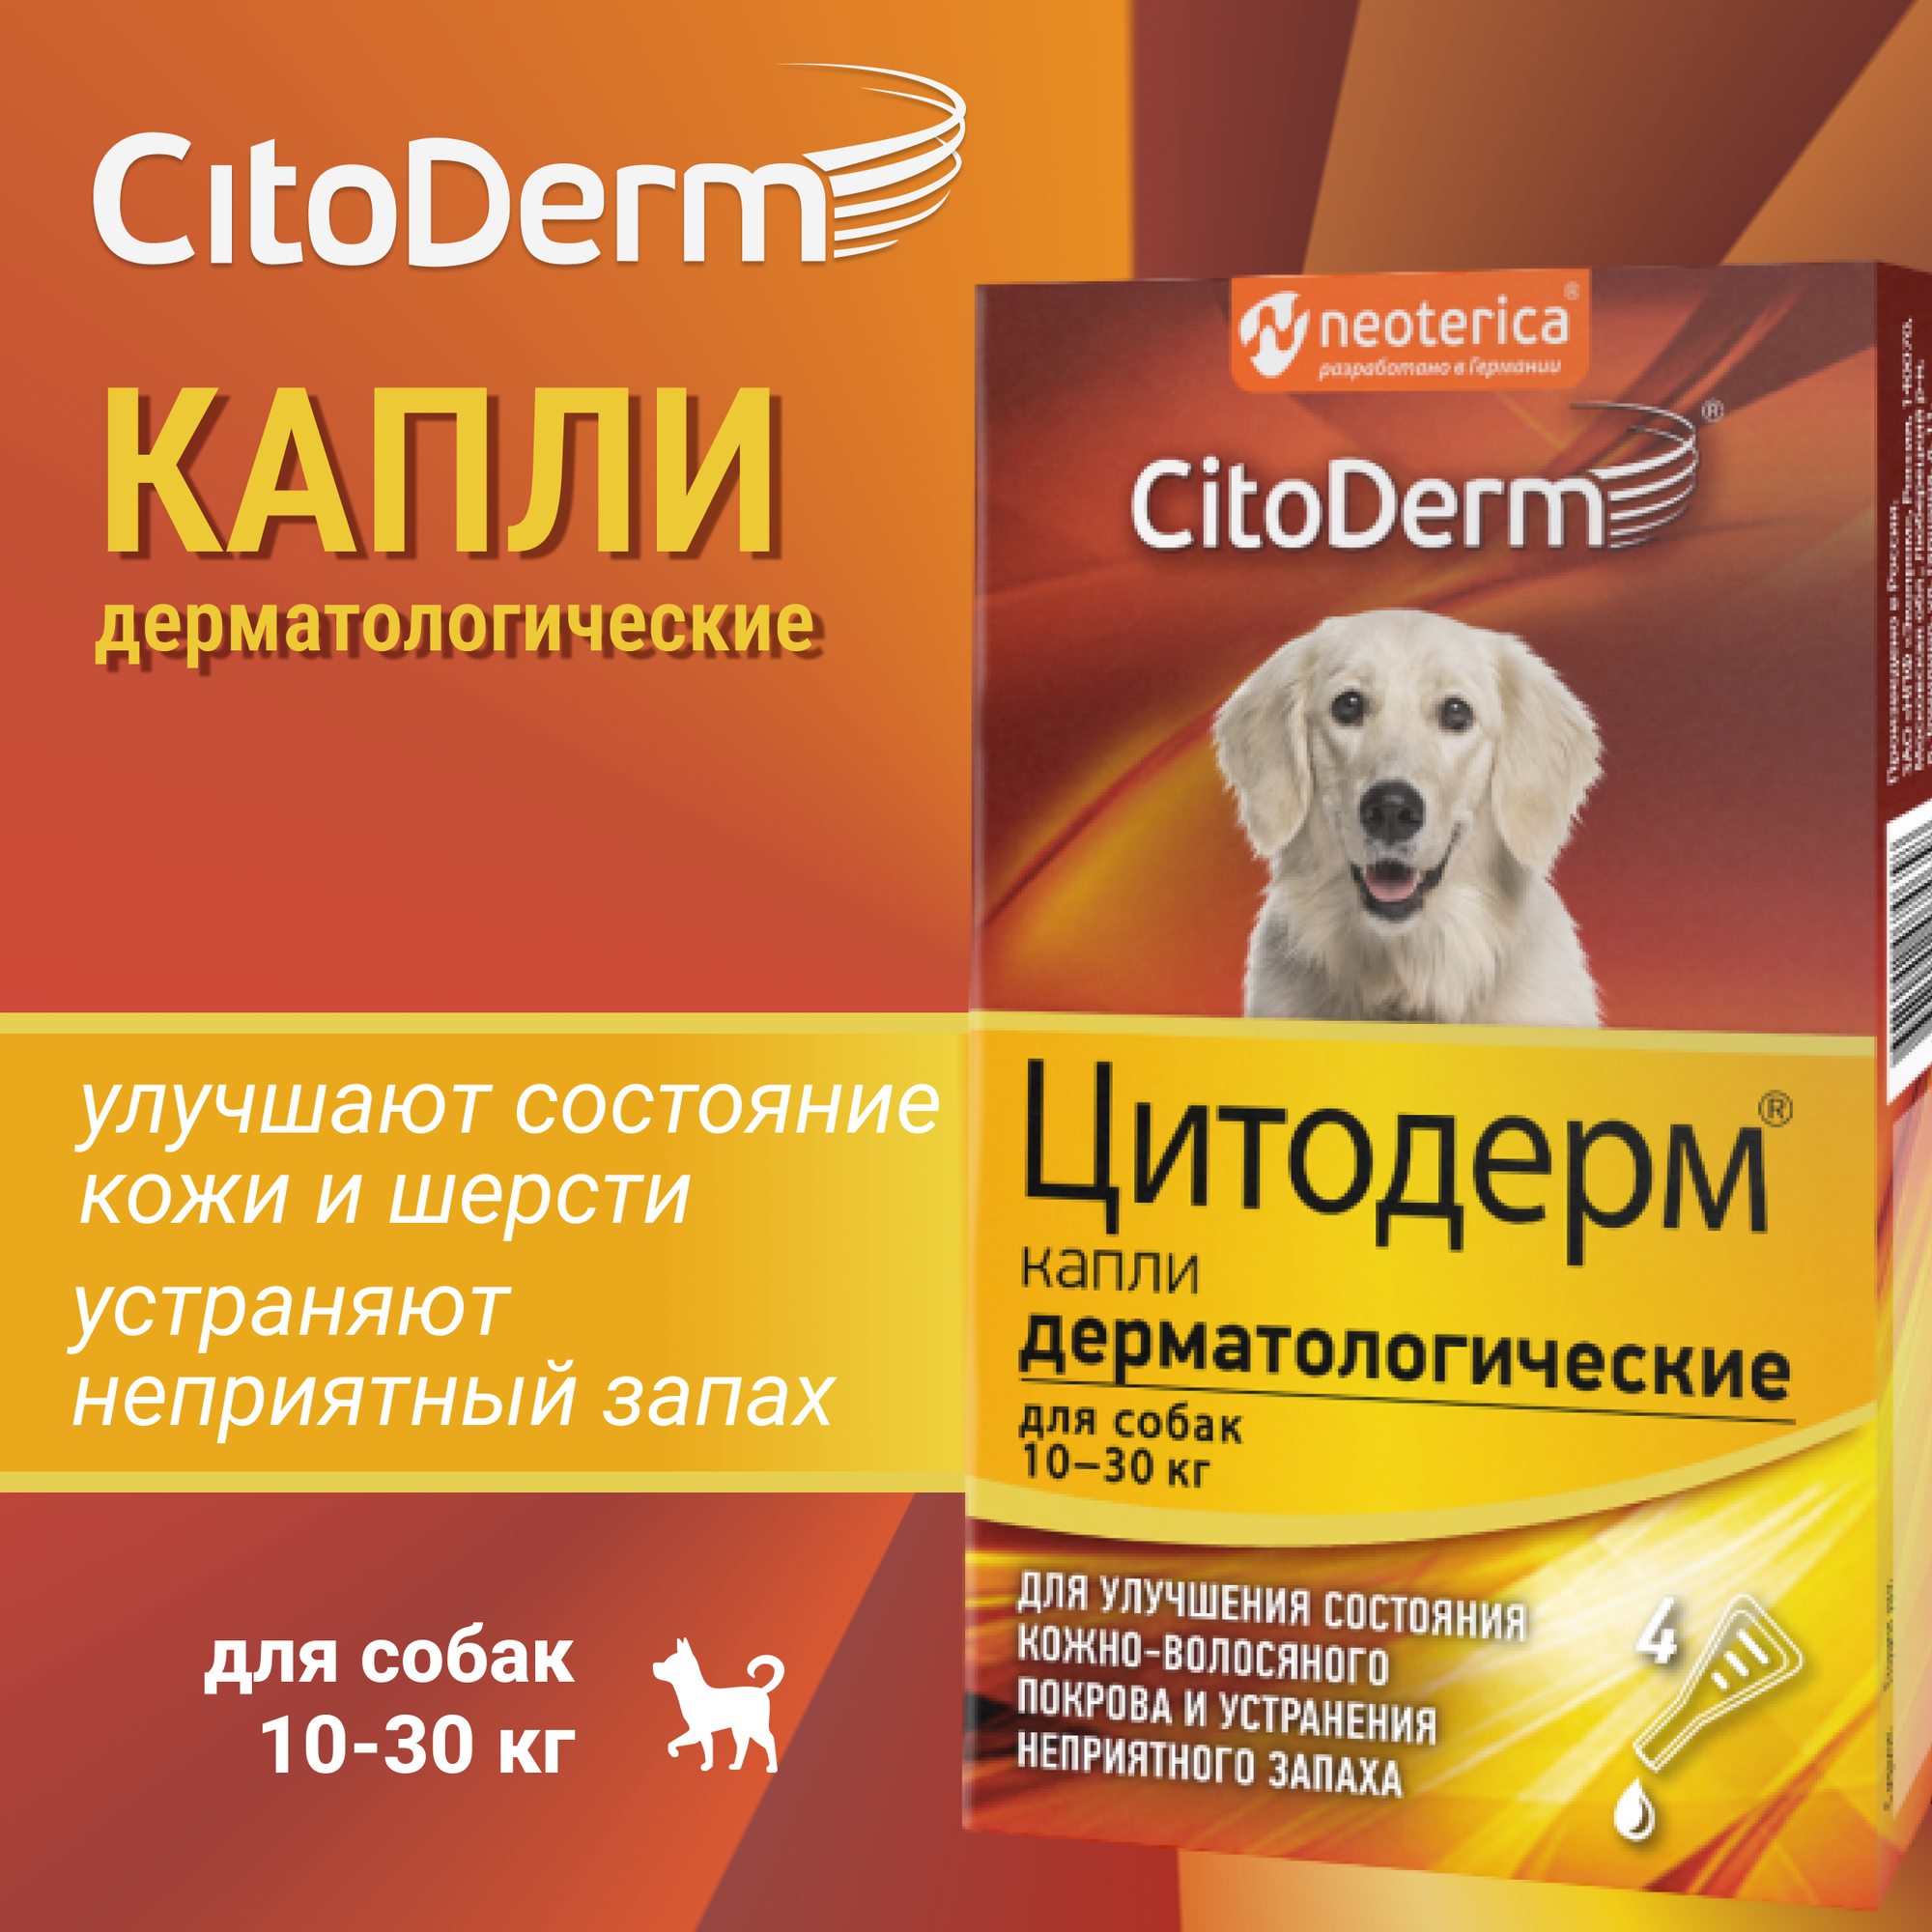 Капли дерматологические CitoDerm для собак 10-30 кг, 4 пипетки по 3мл - фото №2